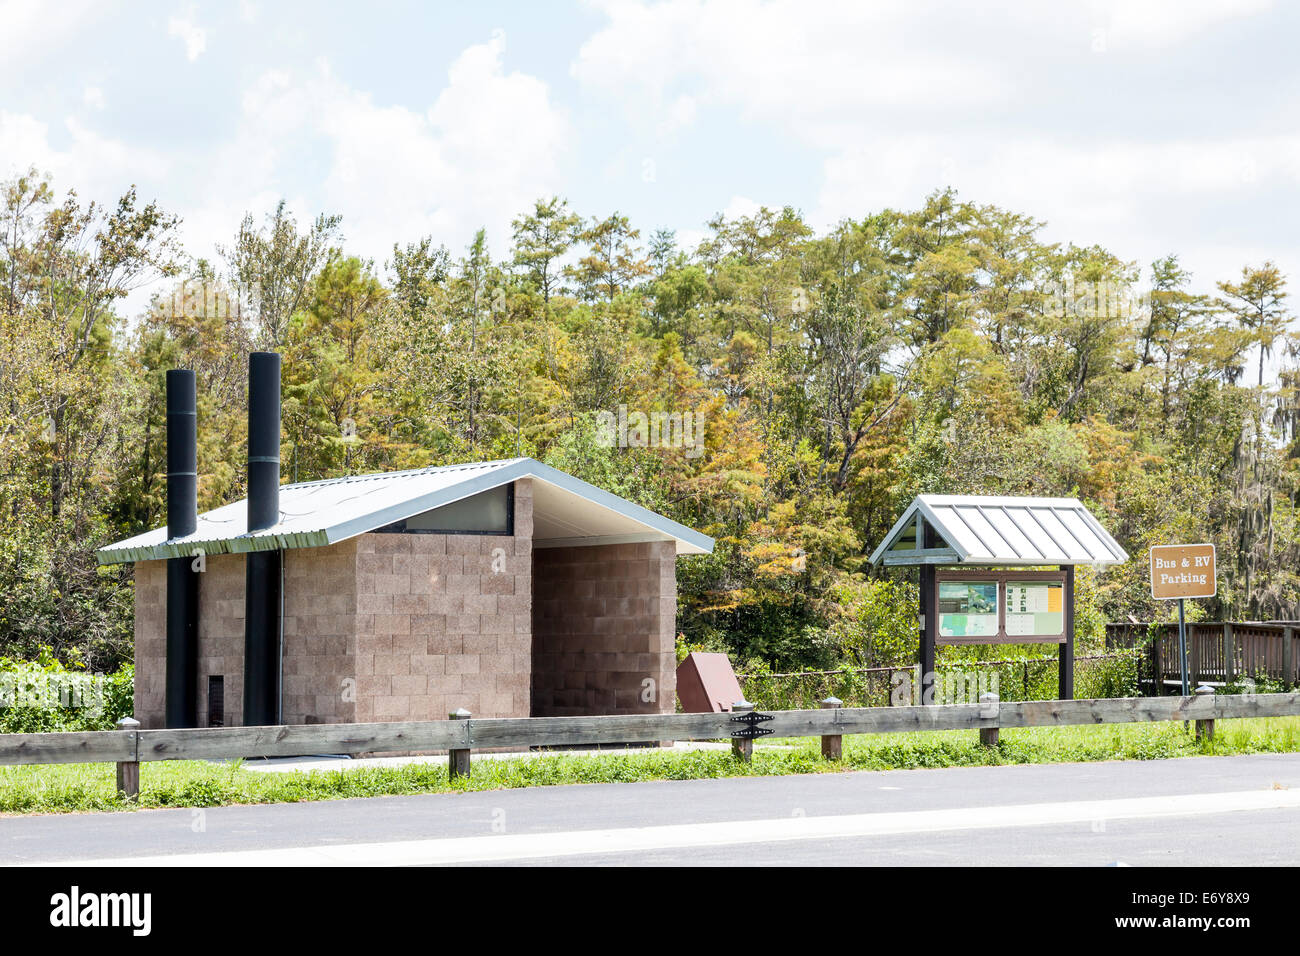 Wc de compostaje baños, área de descanso, bus y RV parking en Gran Ciprés, área de Manejo de Vida Silvestre en Everglades, FL. Foto de stock